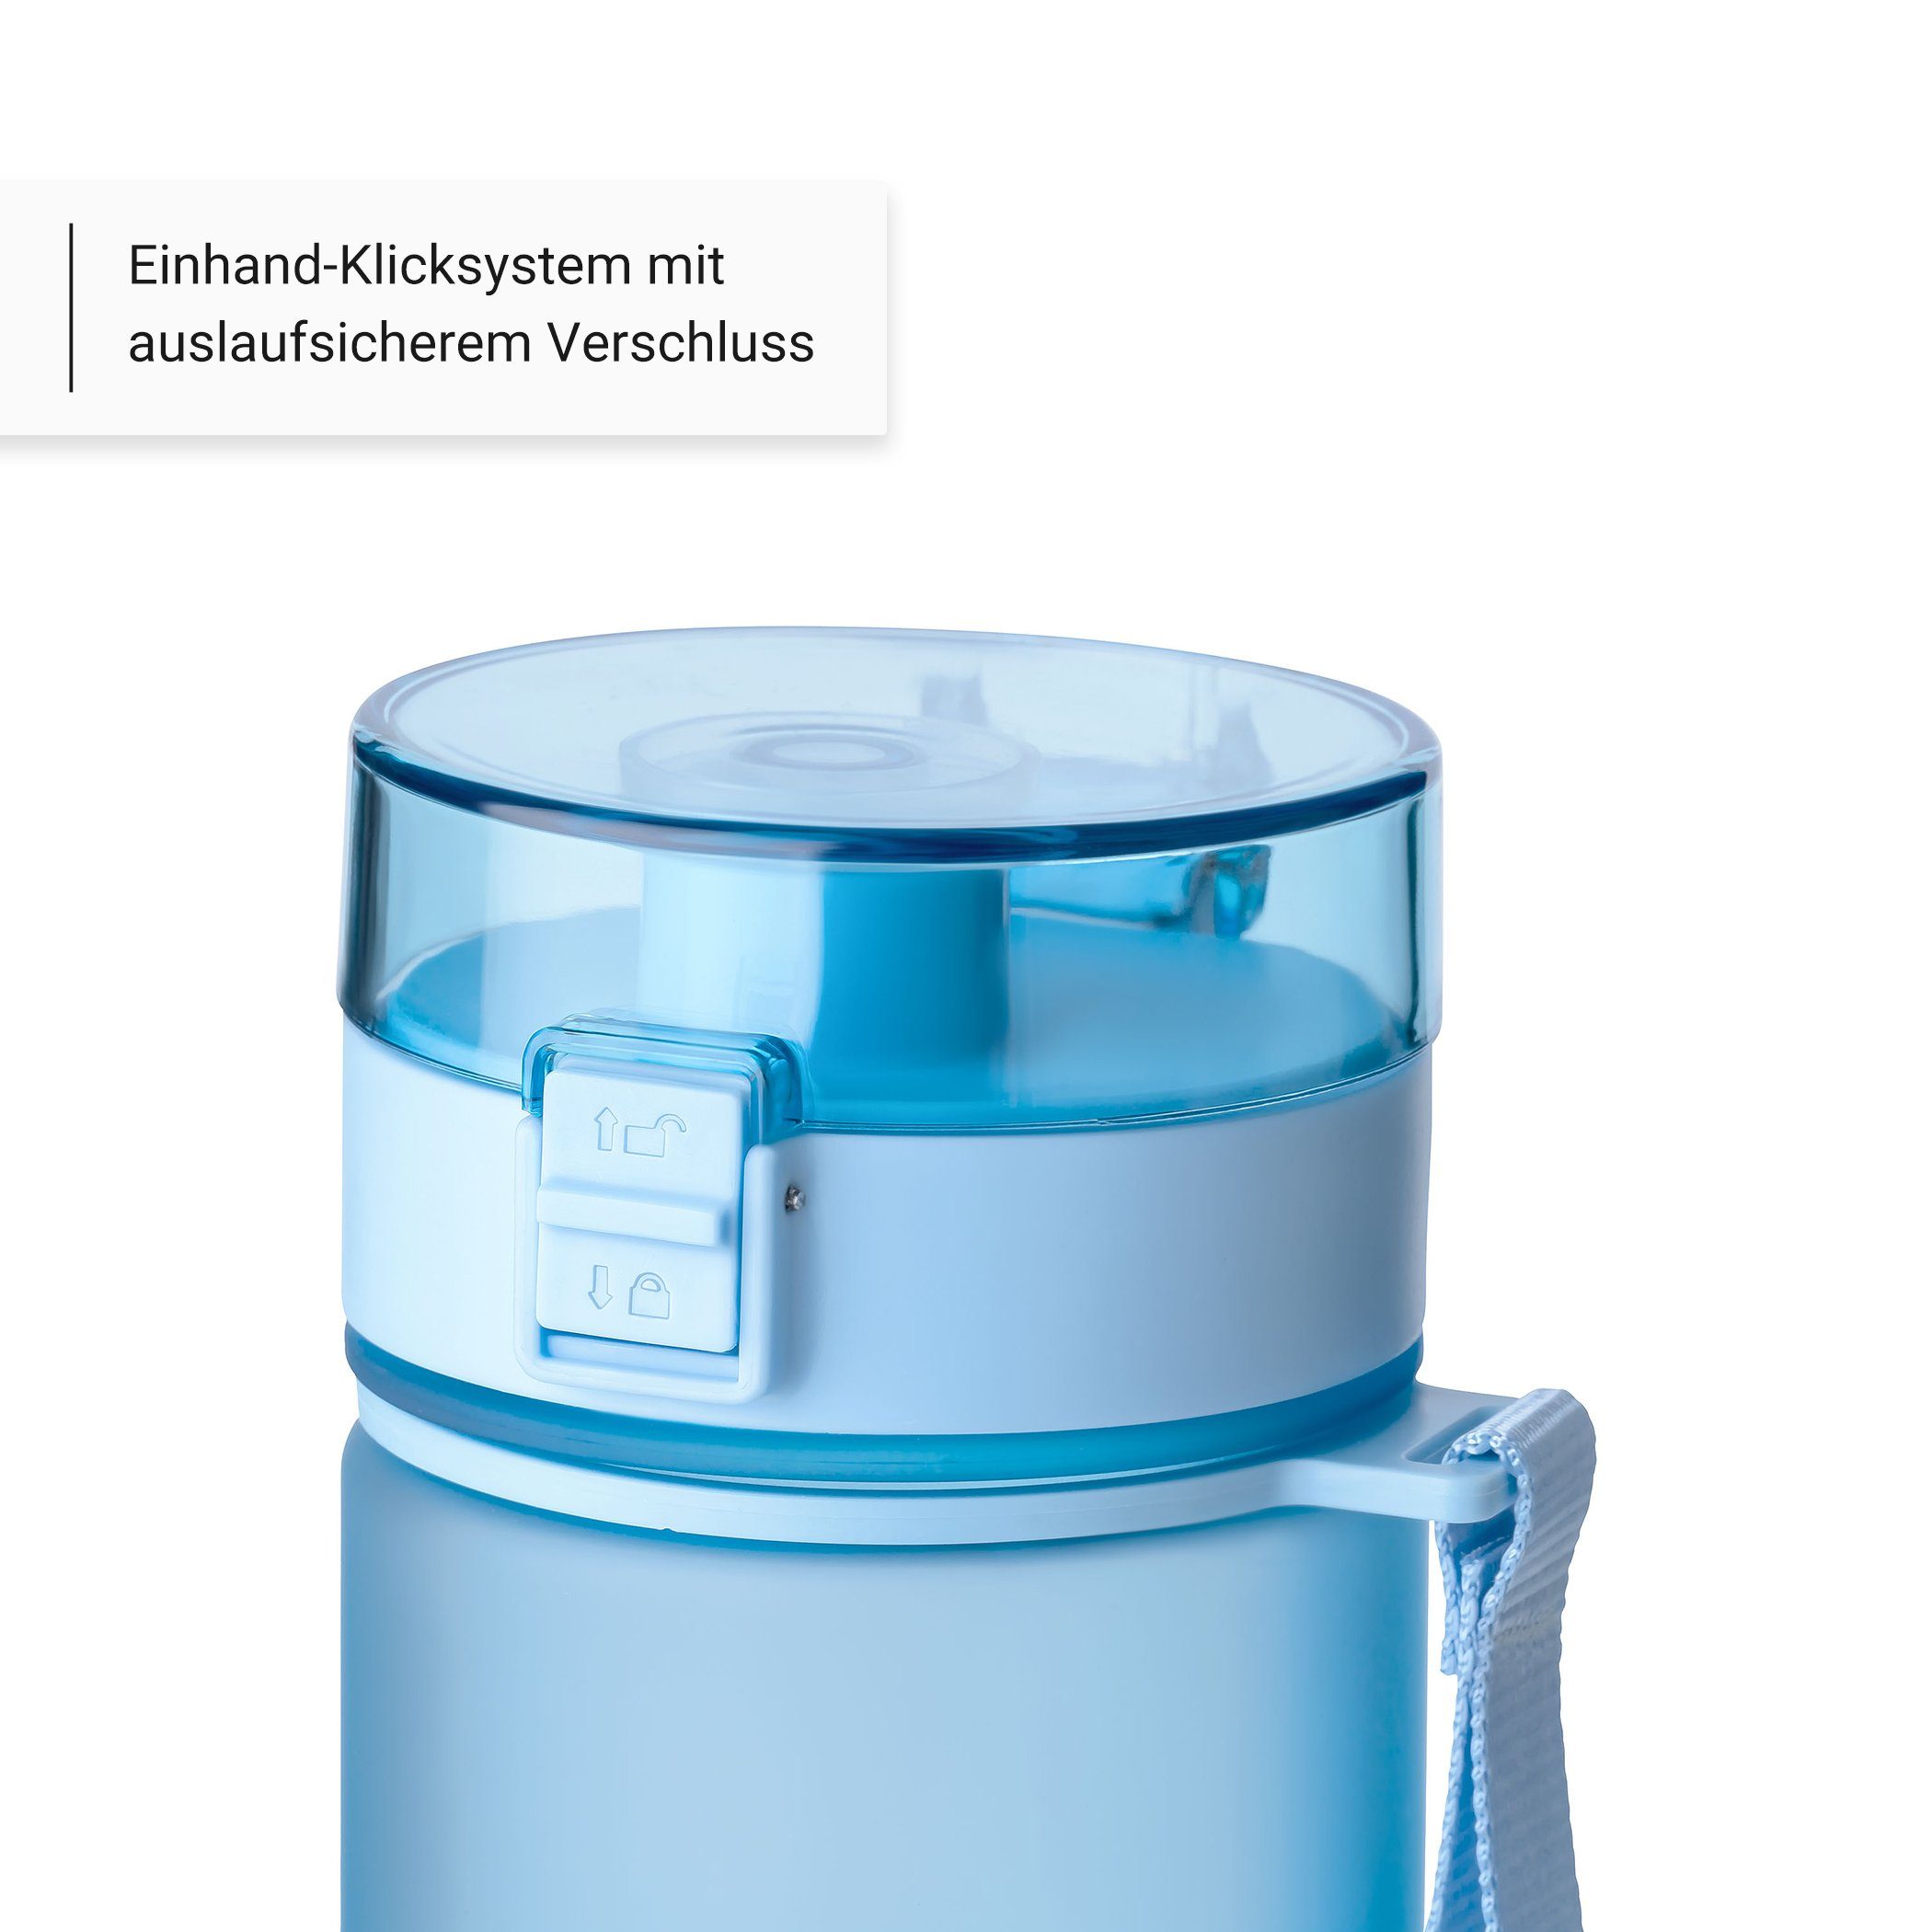 auslaufsicher Hell Geruchs- 1L, frei, Kohlensäure Blau, geeignet, und Geschmacksneutral, - BPA Trinkflasche auslaufsicher Vinsun Trinkflasche Kohlensäure,